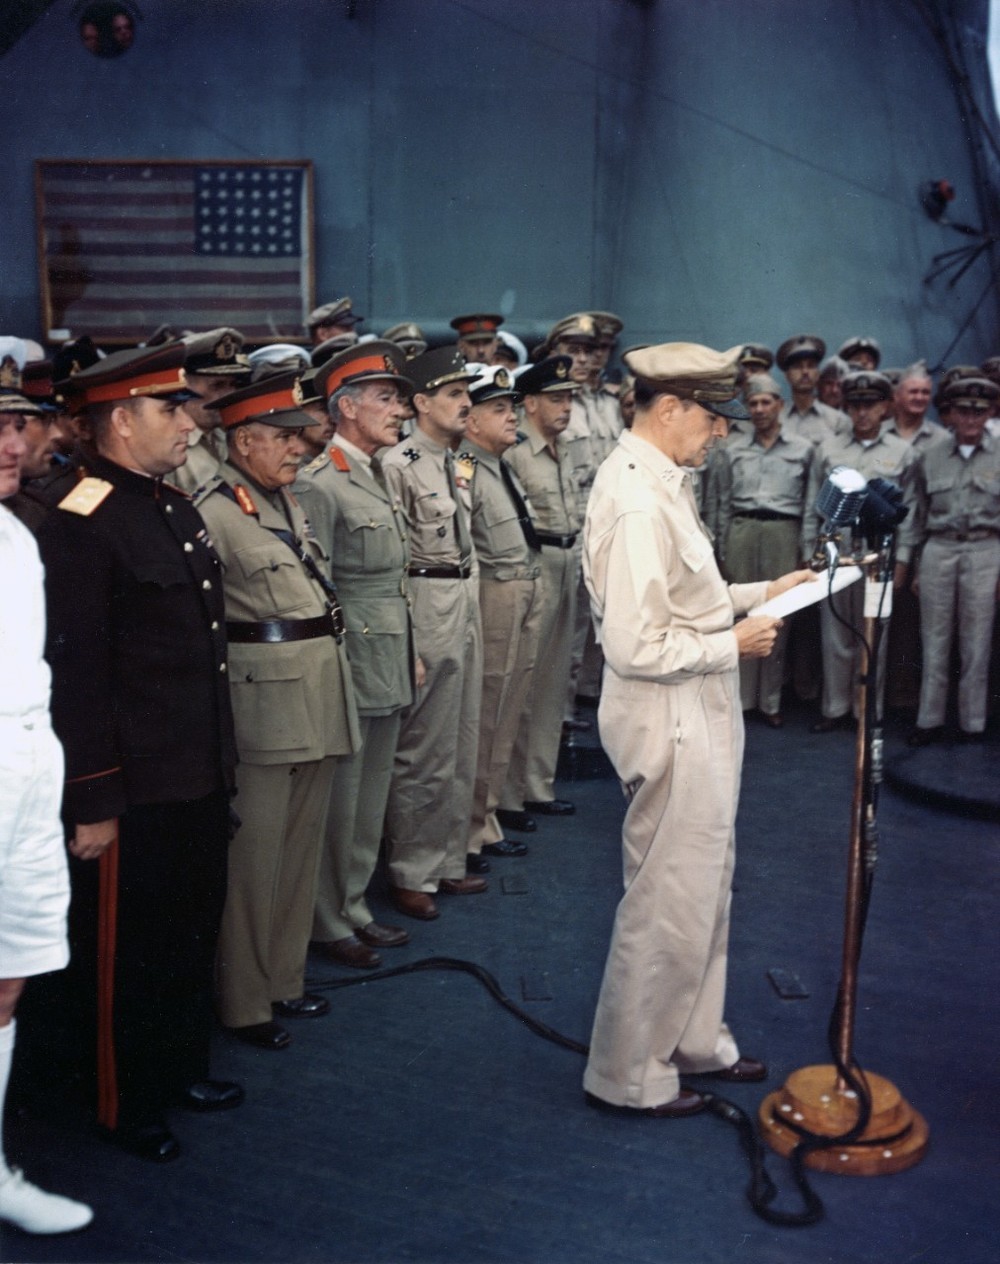 ミズーリ号上で行われた無条件降伏文書調印式でスピーチする連合軍最高司令官のダグラス・マッカーサー元帥。背後には「黒船来航」時の星条旗が飾られている